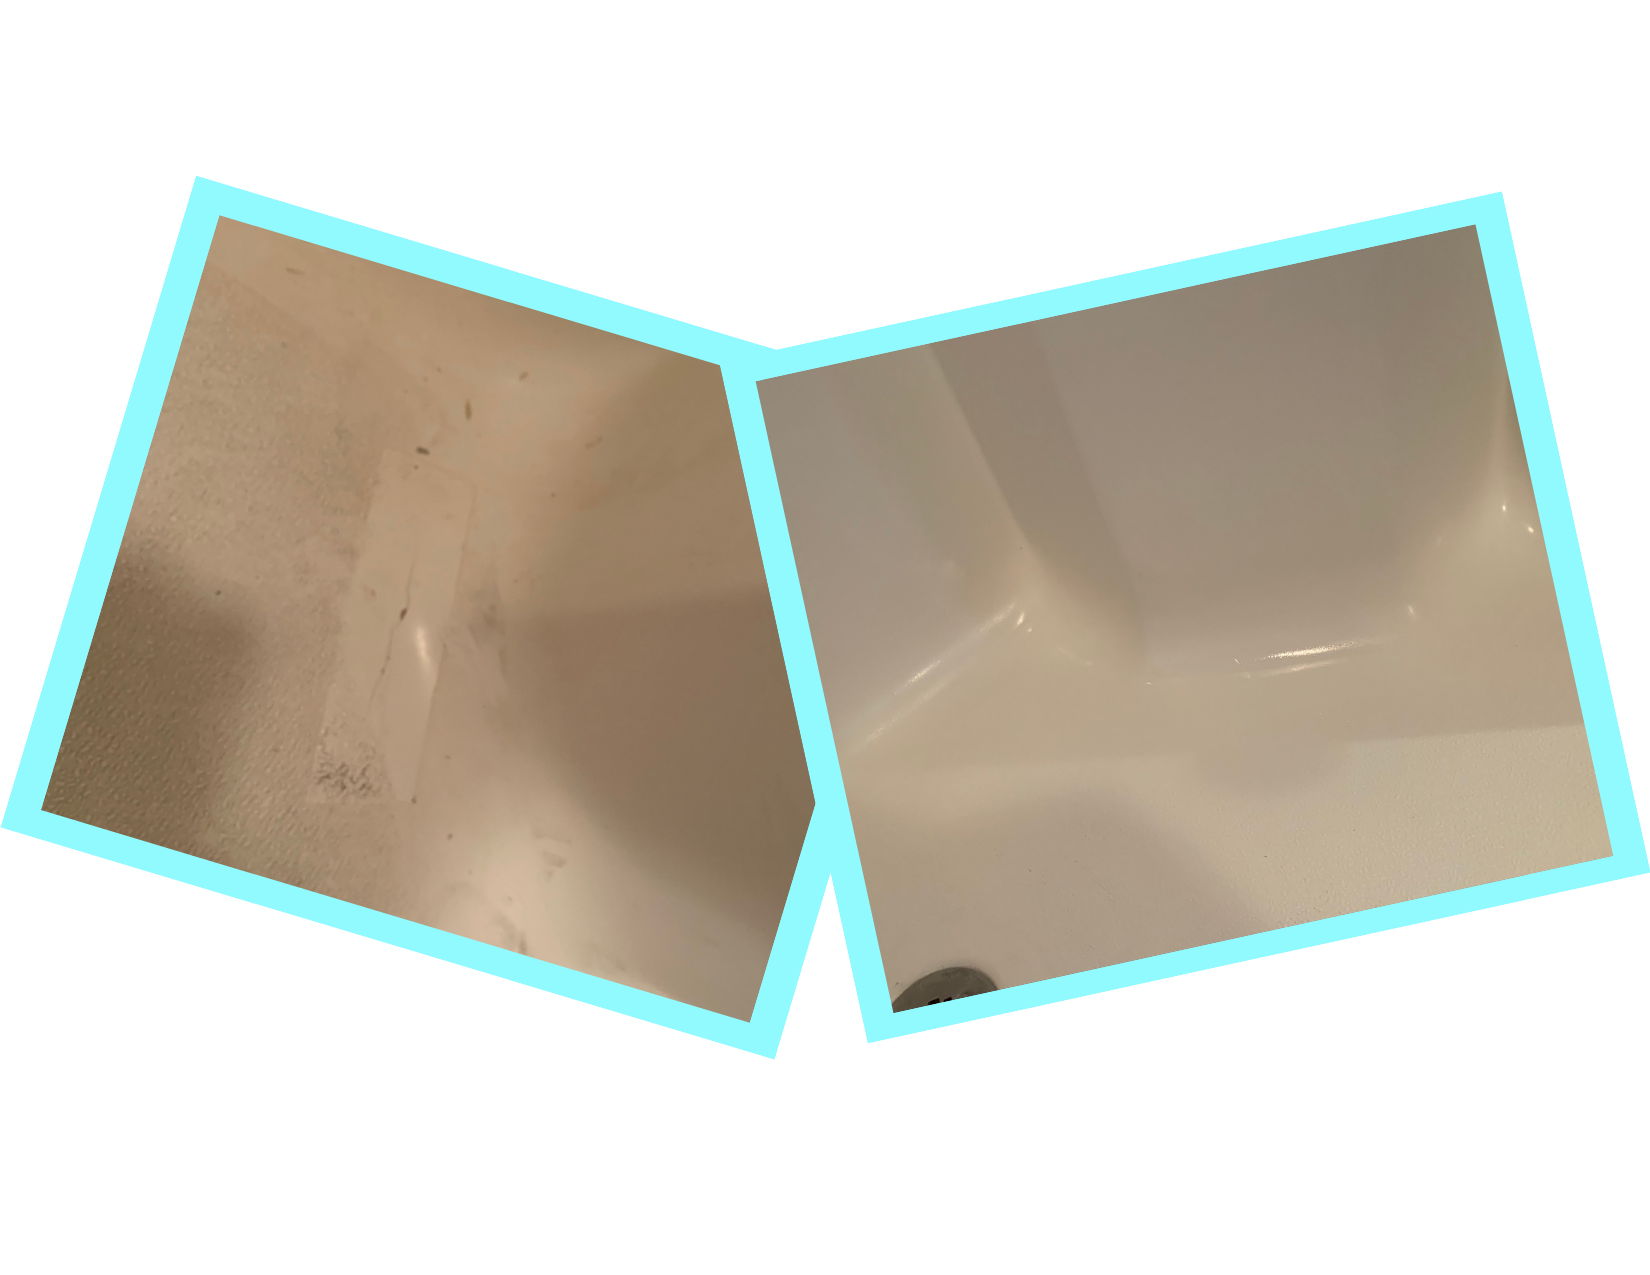  Tub Repair Kit with Color Match, Strong Fiberglass Repair kit,  Seamless Weight Bearing Repairs Floor Cracks : Tools & Home Improvement